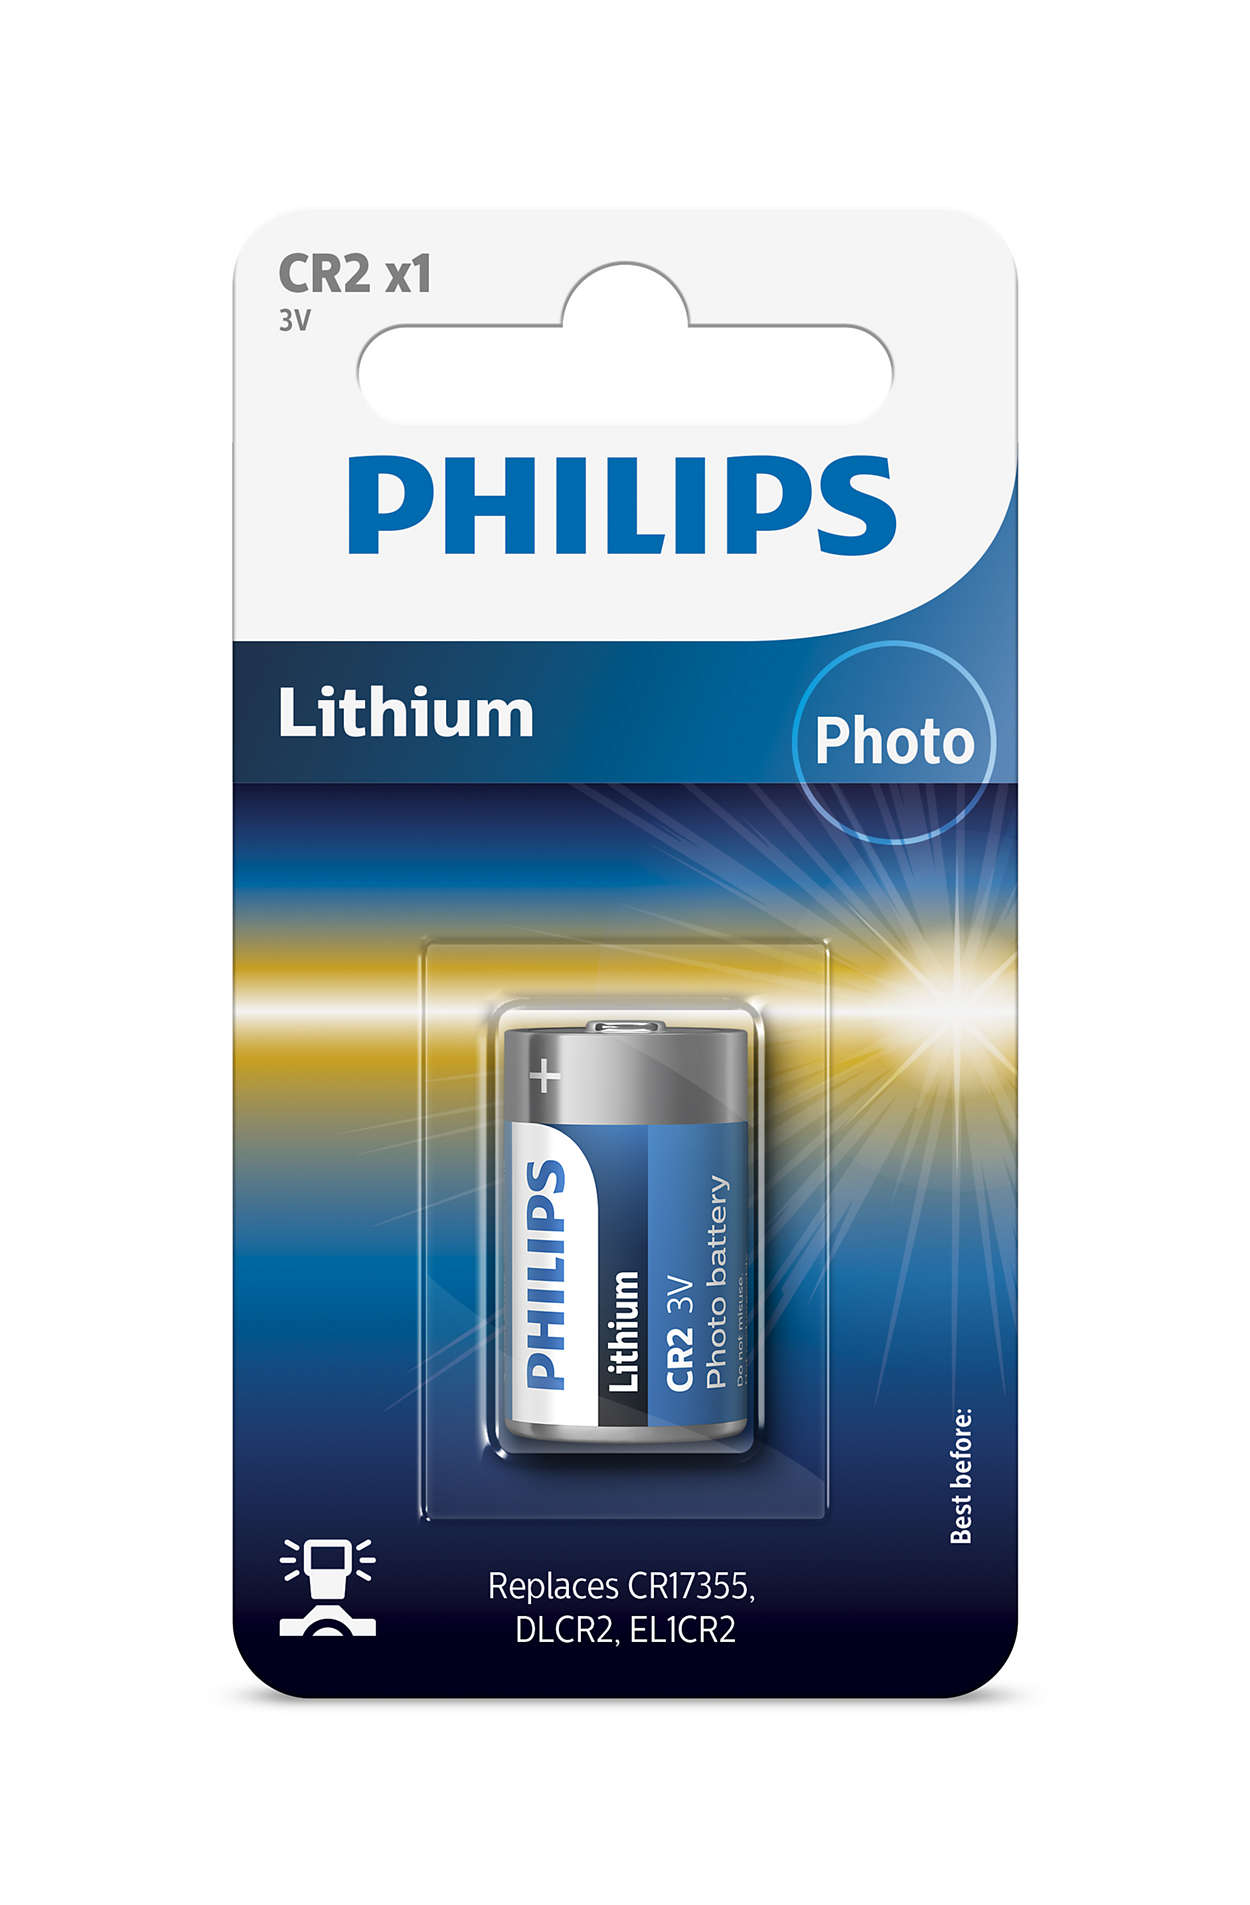 Technologie du lithium haute qualité pour votre appareil photo